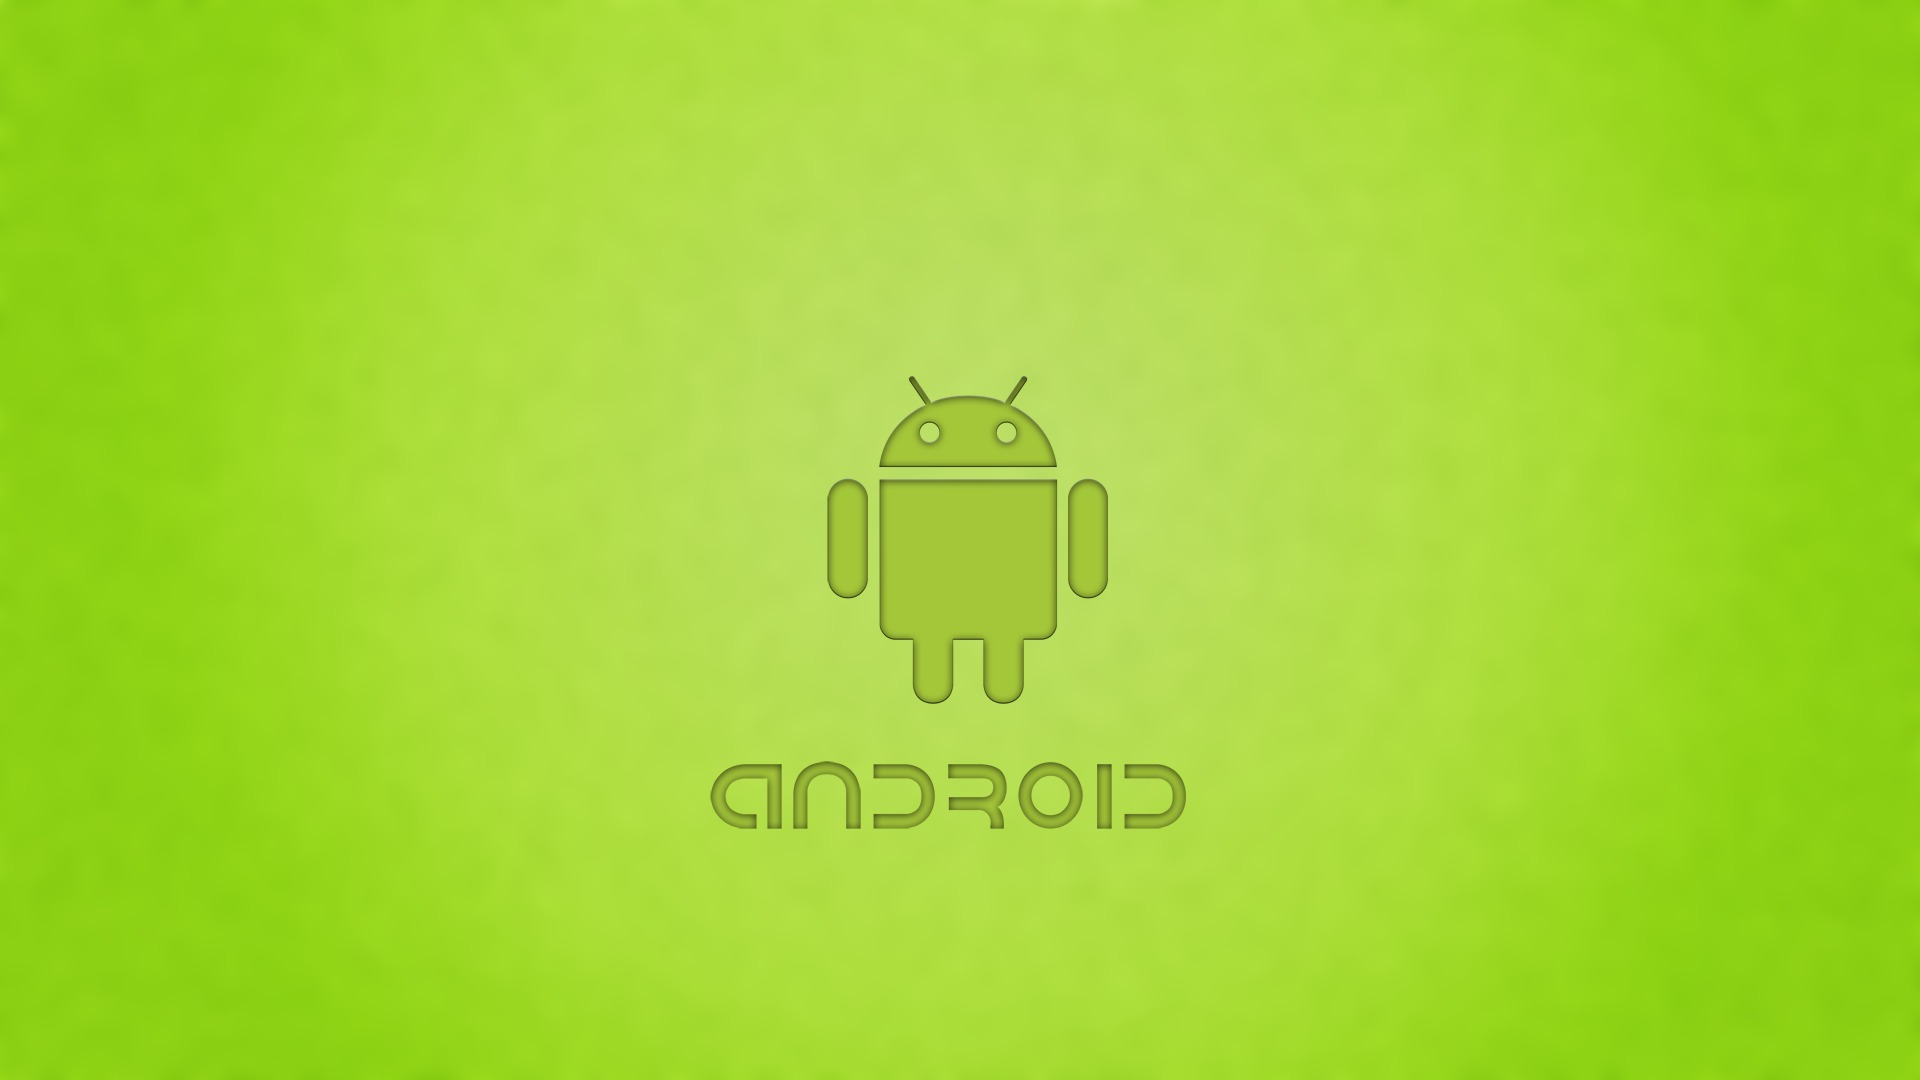 carta da parati unica per android,verde,giallo,font,illustrazione,grafica